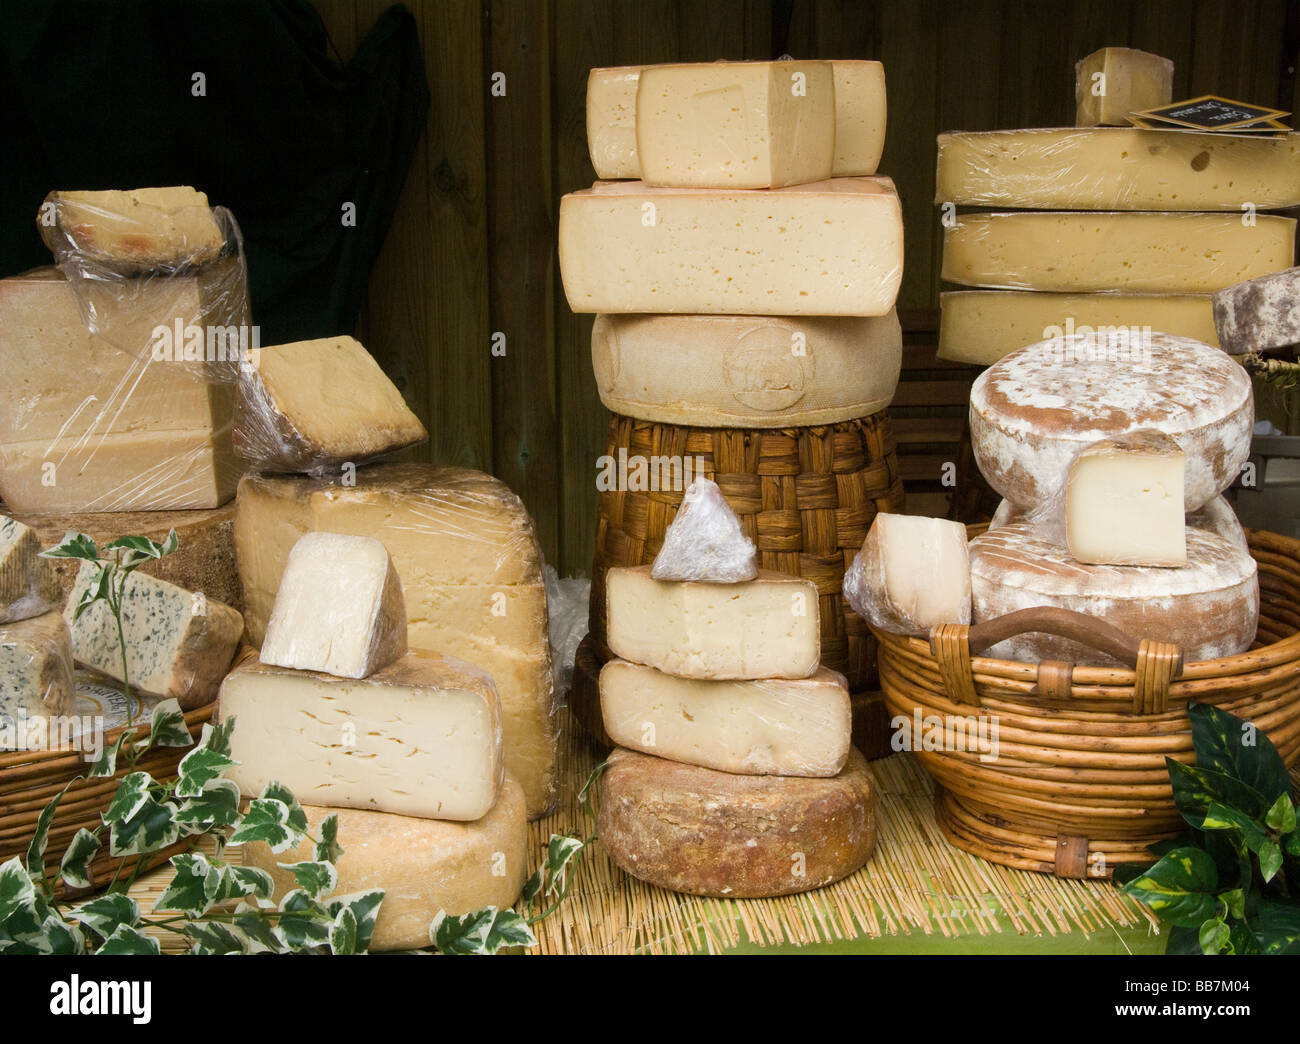 Spain.Vic.Seling traditionellen Käsesorten. Stockfoto